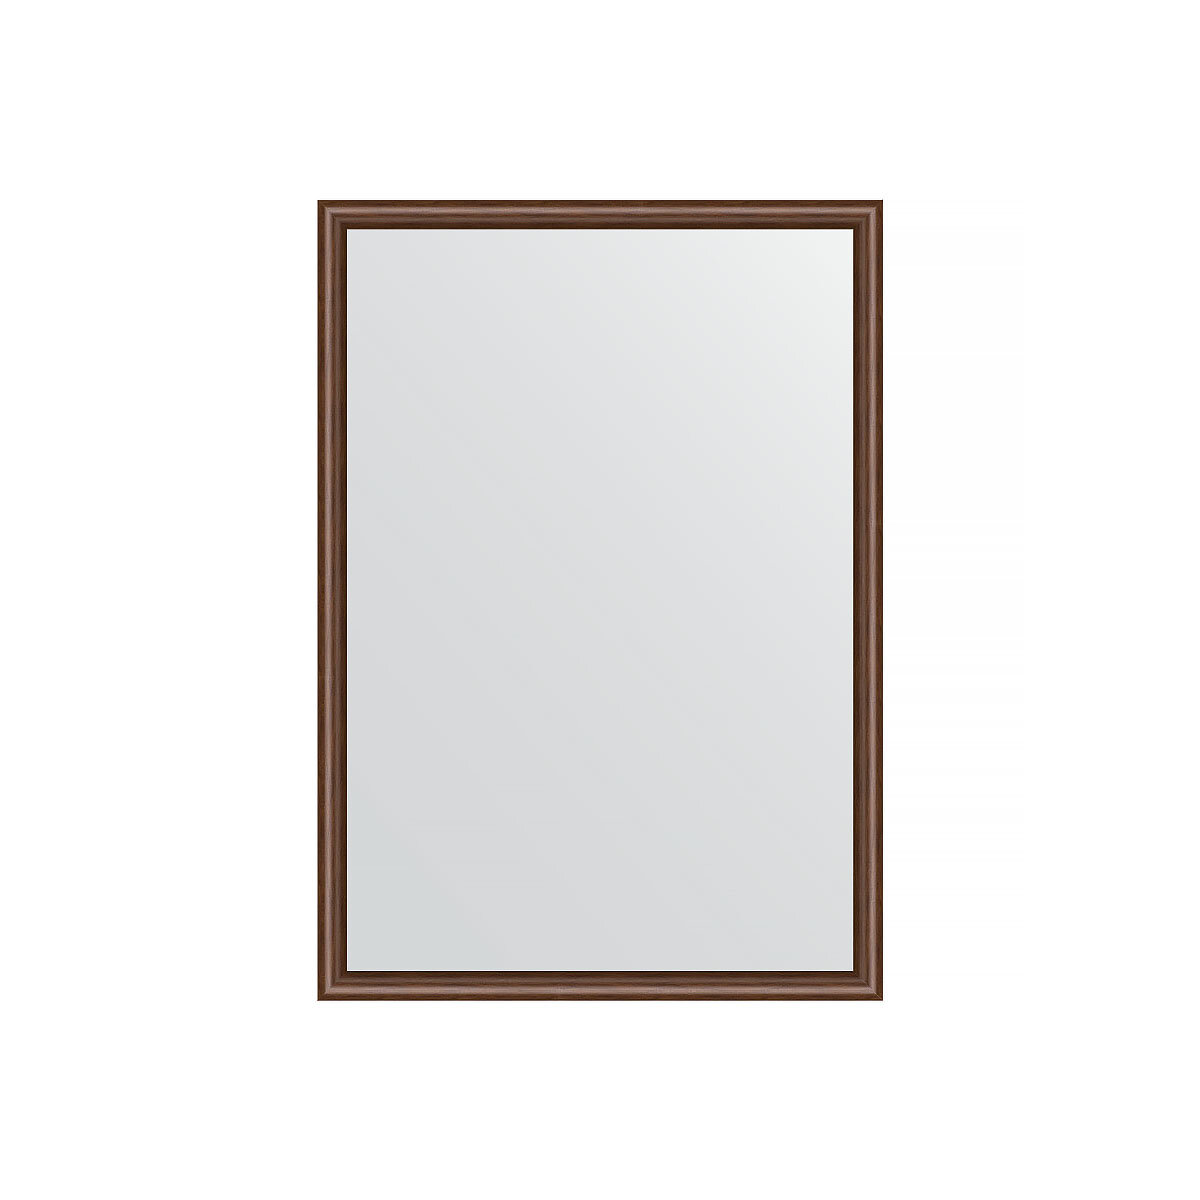 Зеркало настенное EVOFORM в багетной раме орех, 48х68 см, для гостиной, прихожей, кабинета, спальни и ванной комнаты, BY 0620